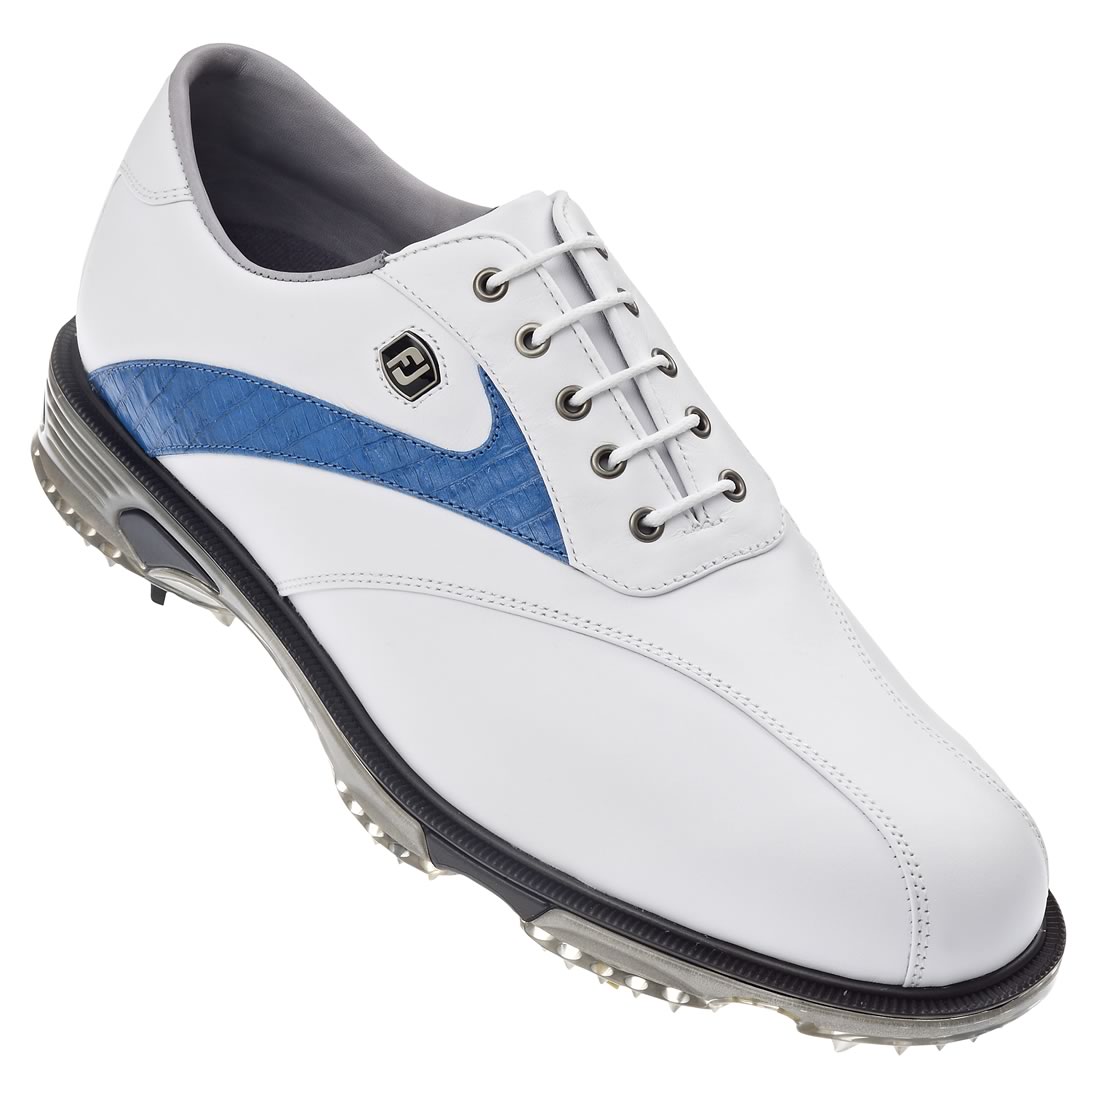 FootJoy Dryjoys Tour Golf Shoes White/Blue #53685